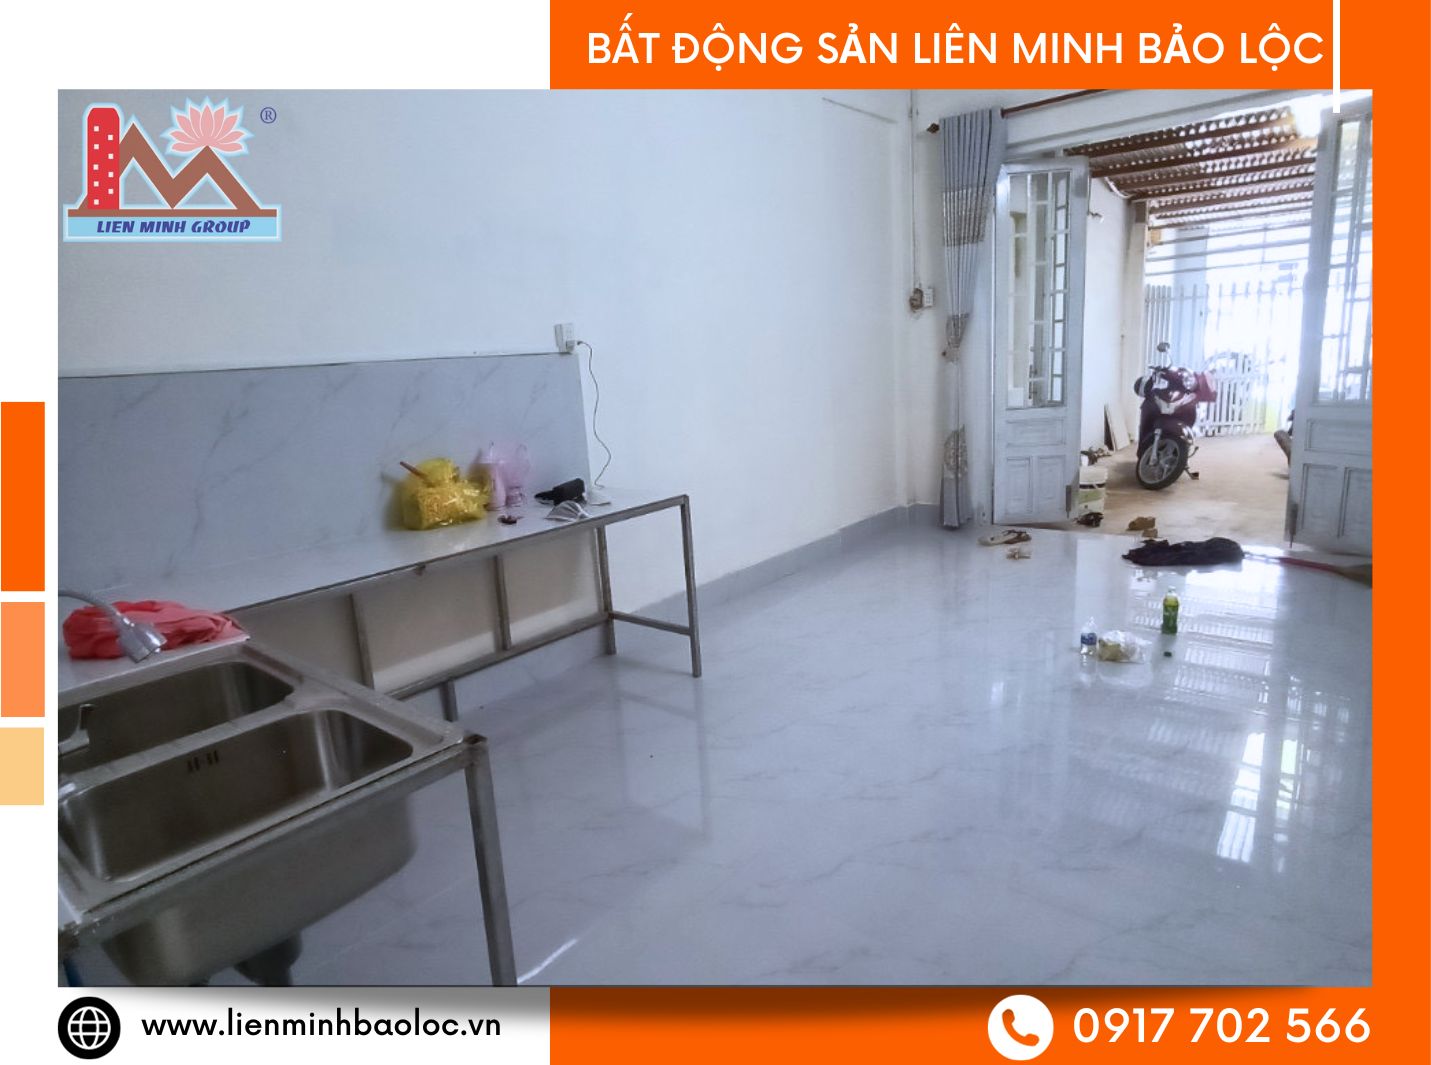 Cho thuê nhà mặt tiền kinh doanh nhỏ lẻ tại Bảo Lộc